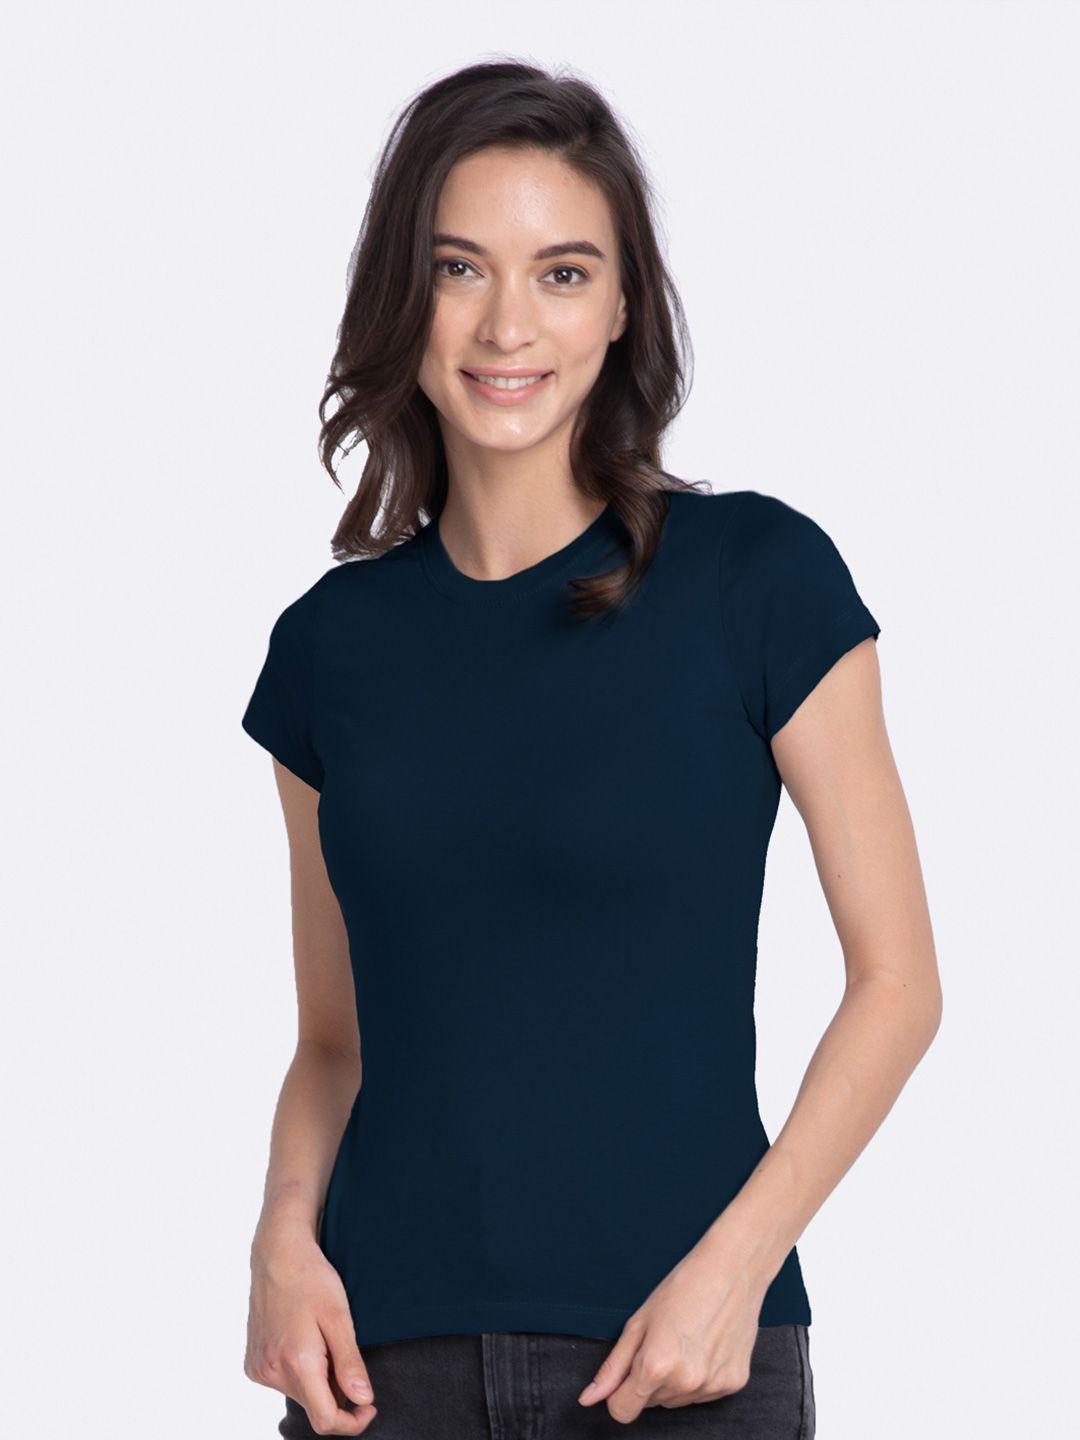 bewakoof-women-blue-solid-round-neck-t-shirt